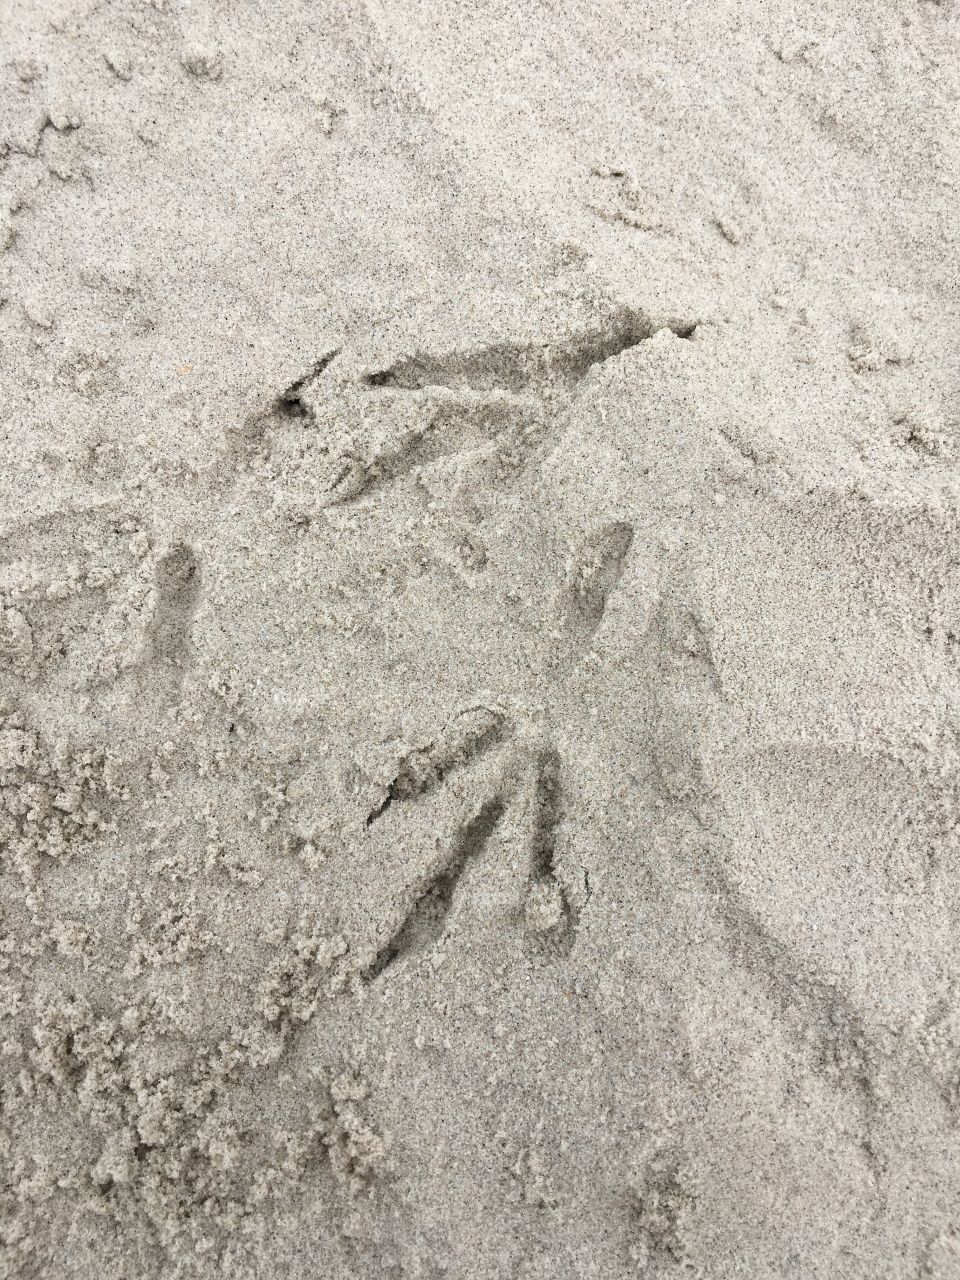 Bird tracks in the beach, tracks in the sand, beach, seagull, sand, coast, footprints